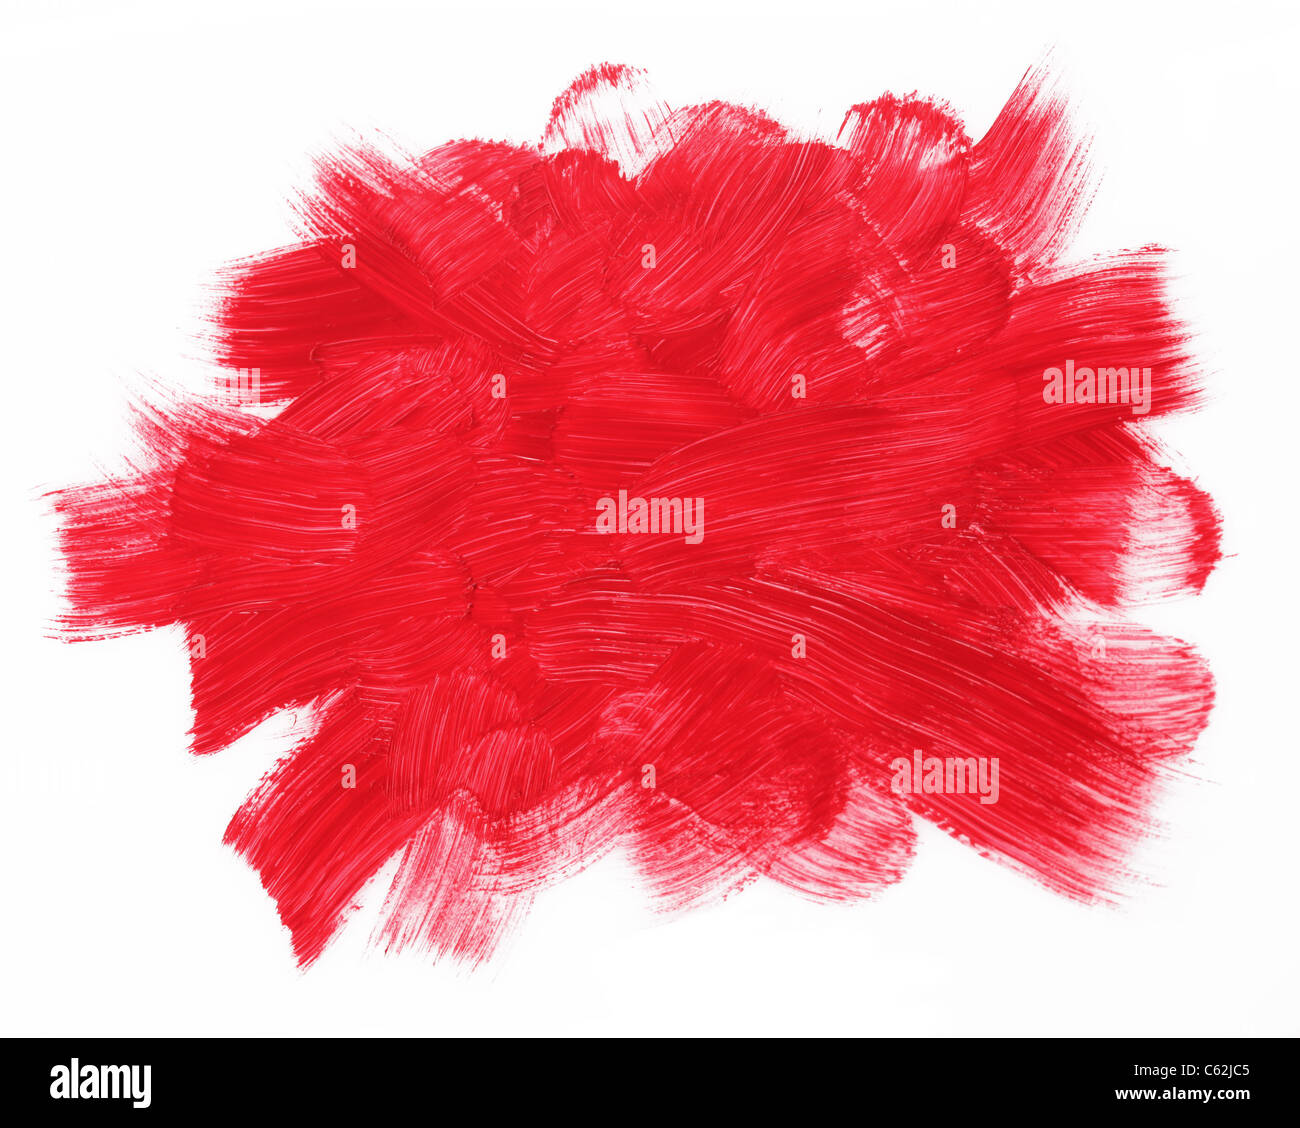 Roten Pinselstrichen isoliert auf einem weißen Hintergrund. Stockfoto